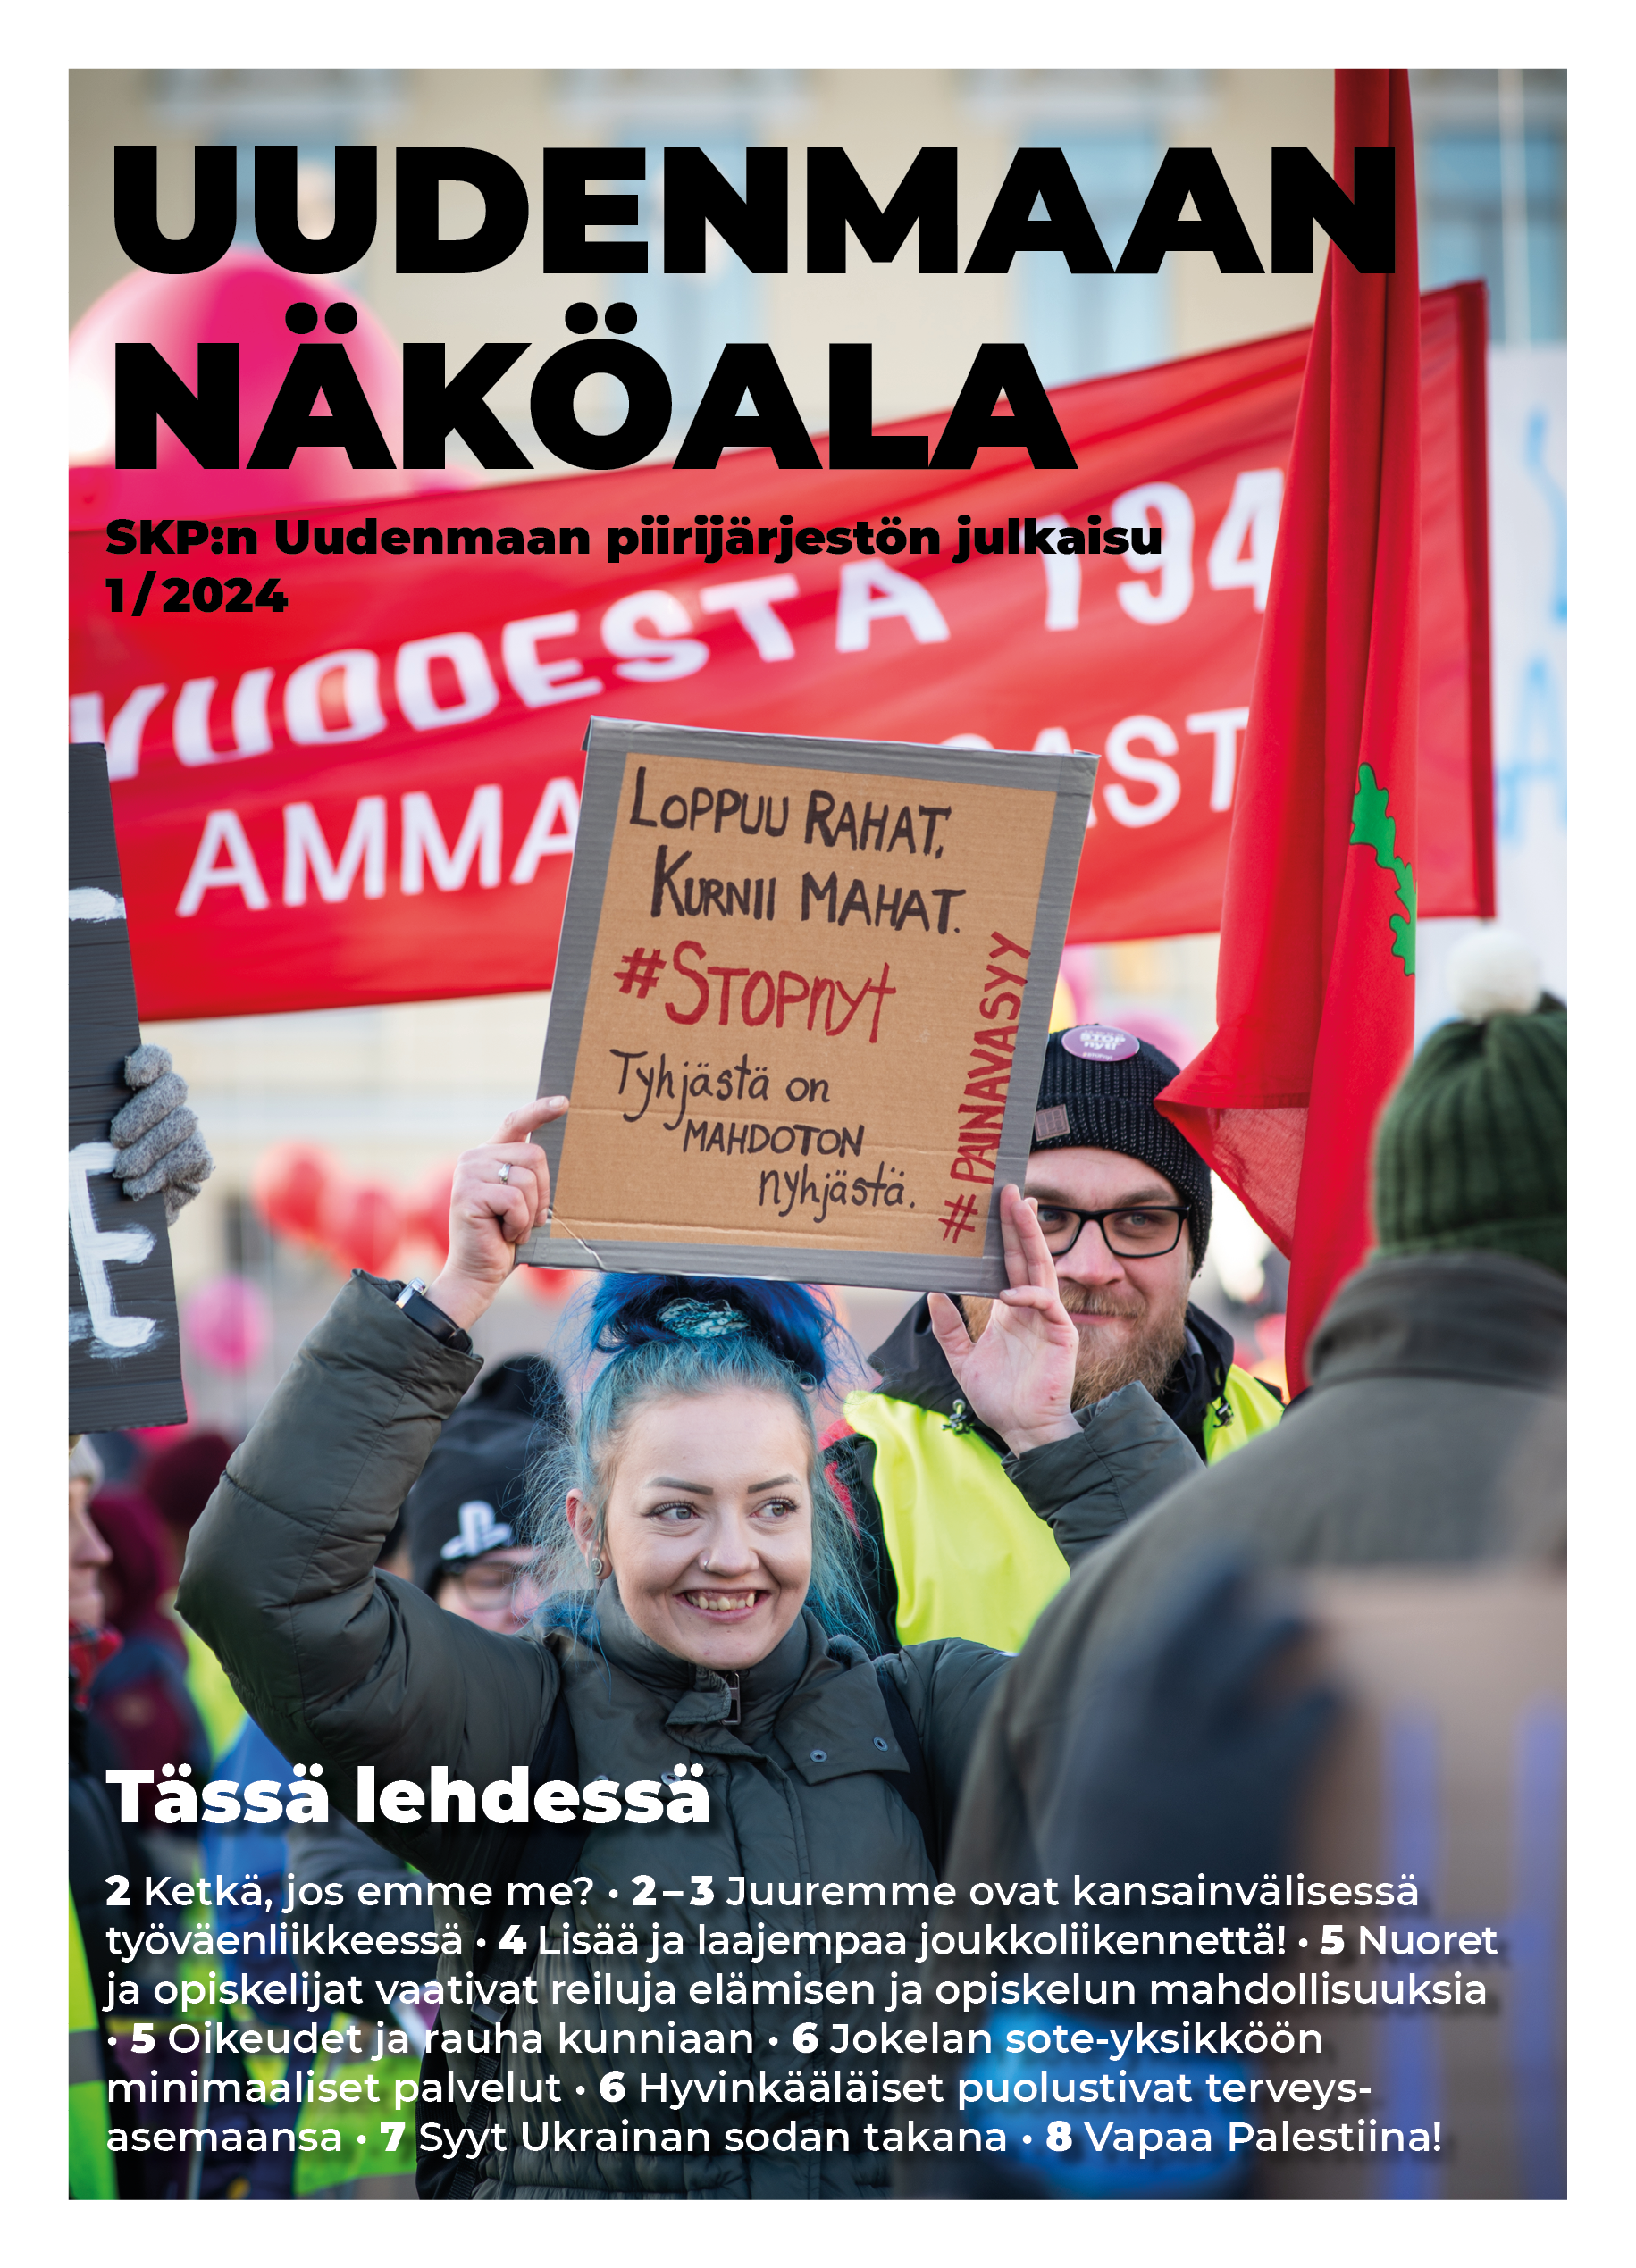 Uudenmaan Näköalan numeron 1/2024 kansi, jonka kansikuvassa mielenosoittaja pitää kylttiä, jossa lukee "Loppuu rahat, kurnii mahat - #STOPnyt, Tyhjästä on mahdoton nyhjästä", kannessa myös lehden nimi ja sisällysluettelo.